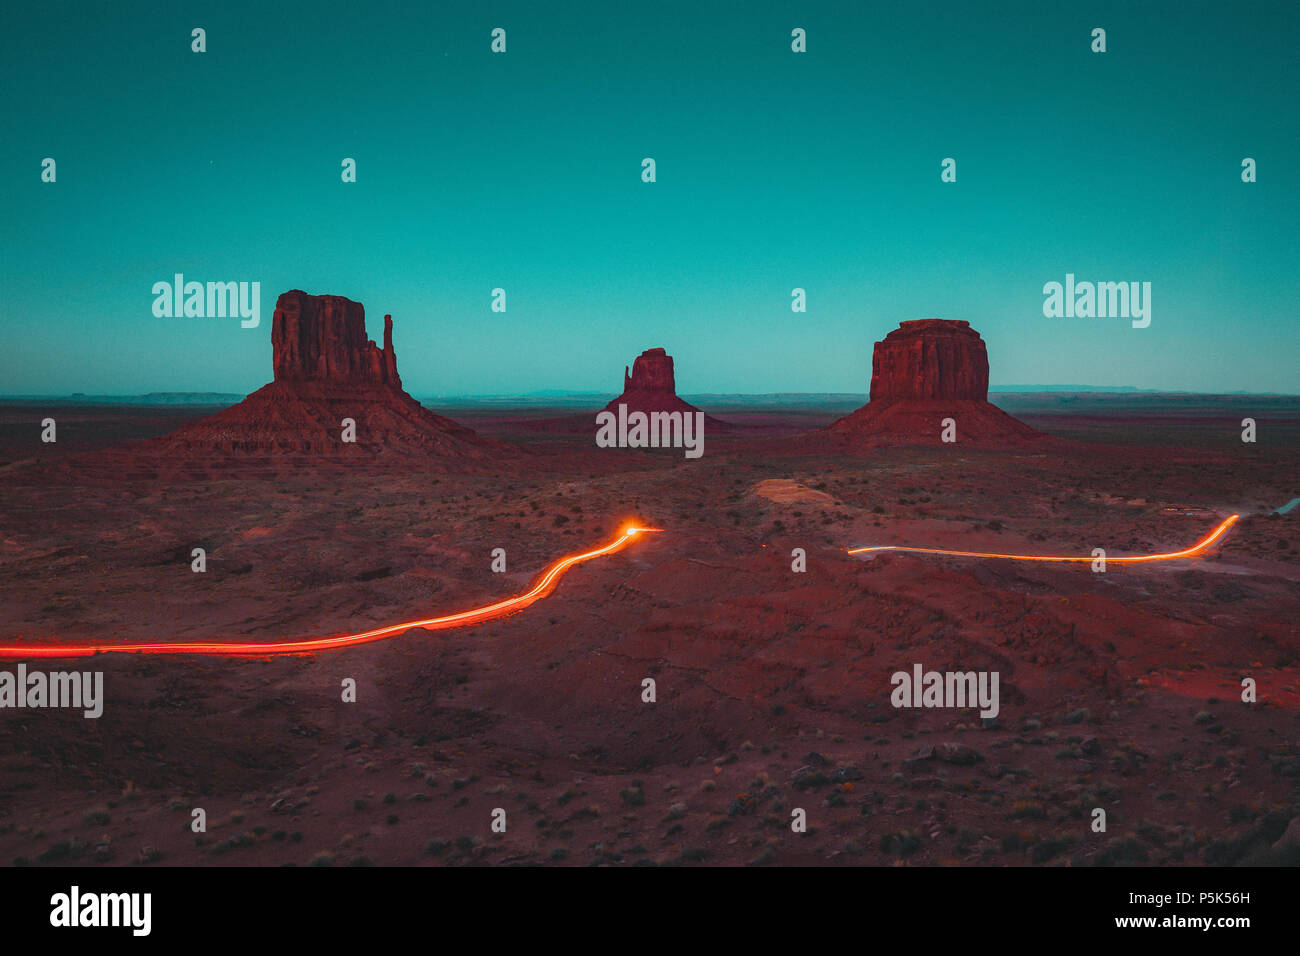 Visualizzazione classica di scenic Monument Valley con il famoso mezzoguanti e Merrick Butte con percorsi di luce durante la notte in estate, Arizona, Stati Uniti d'America Foto Stock